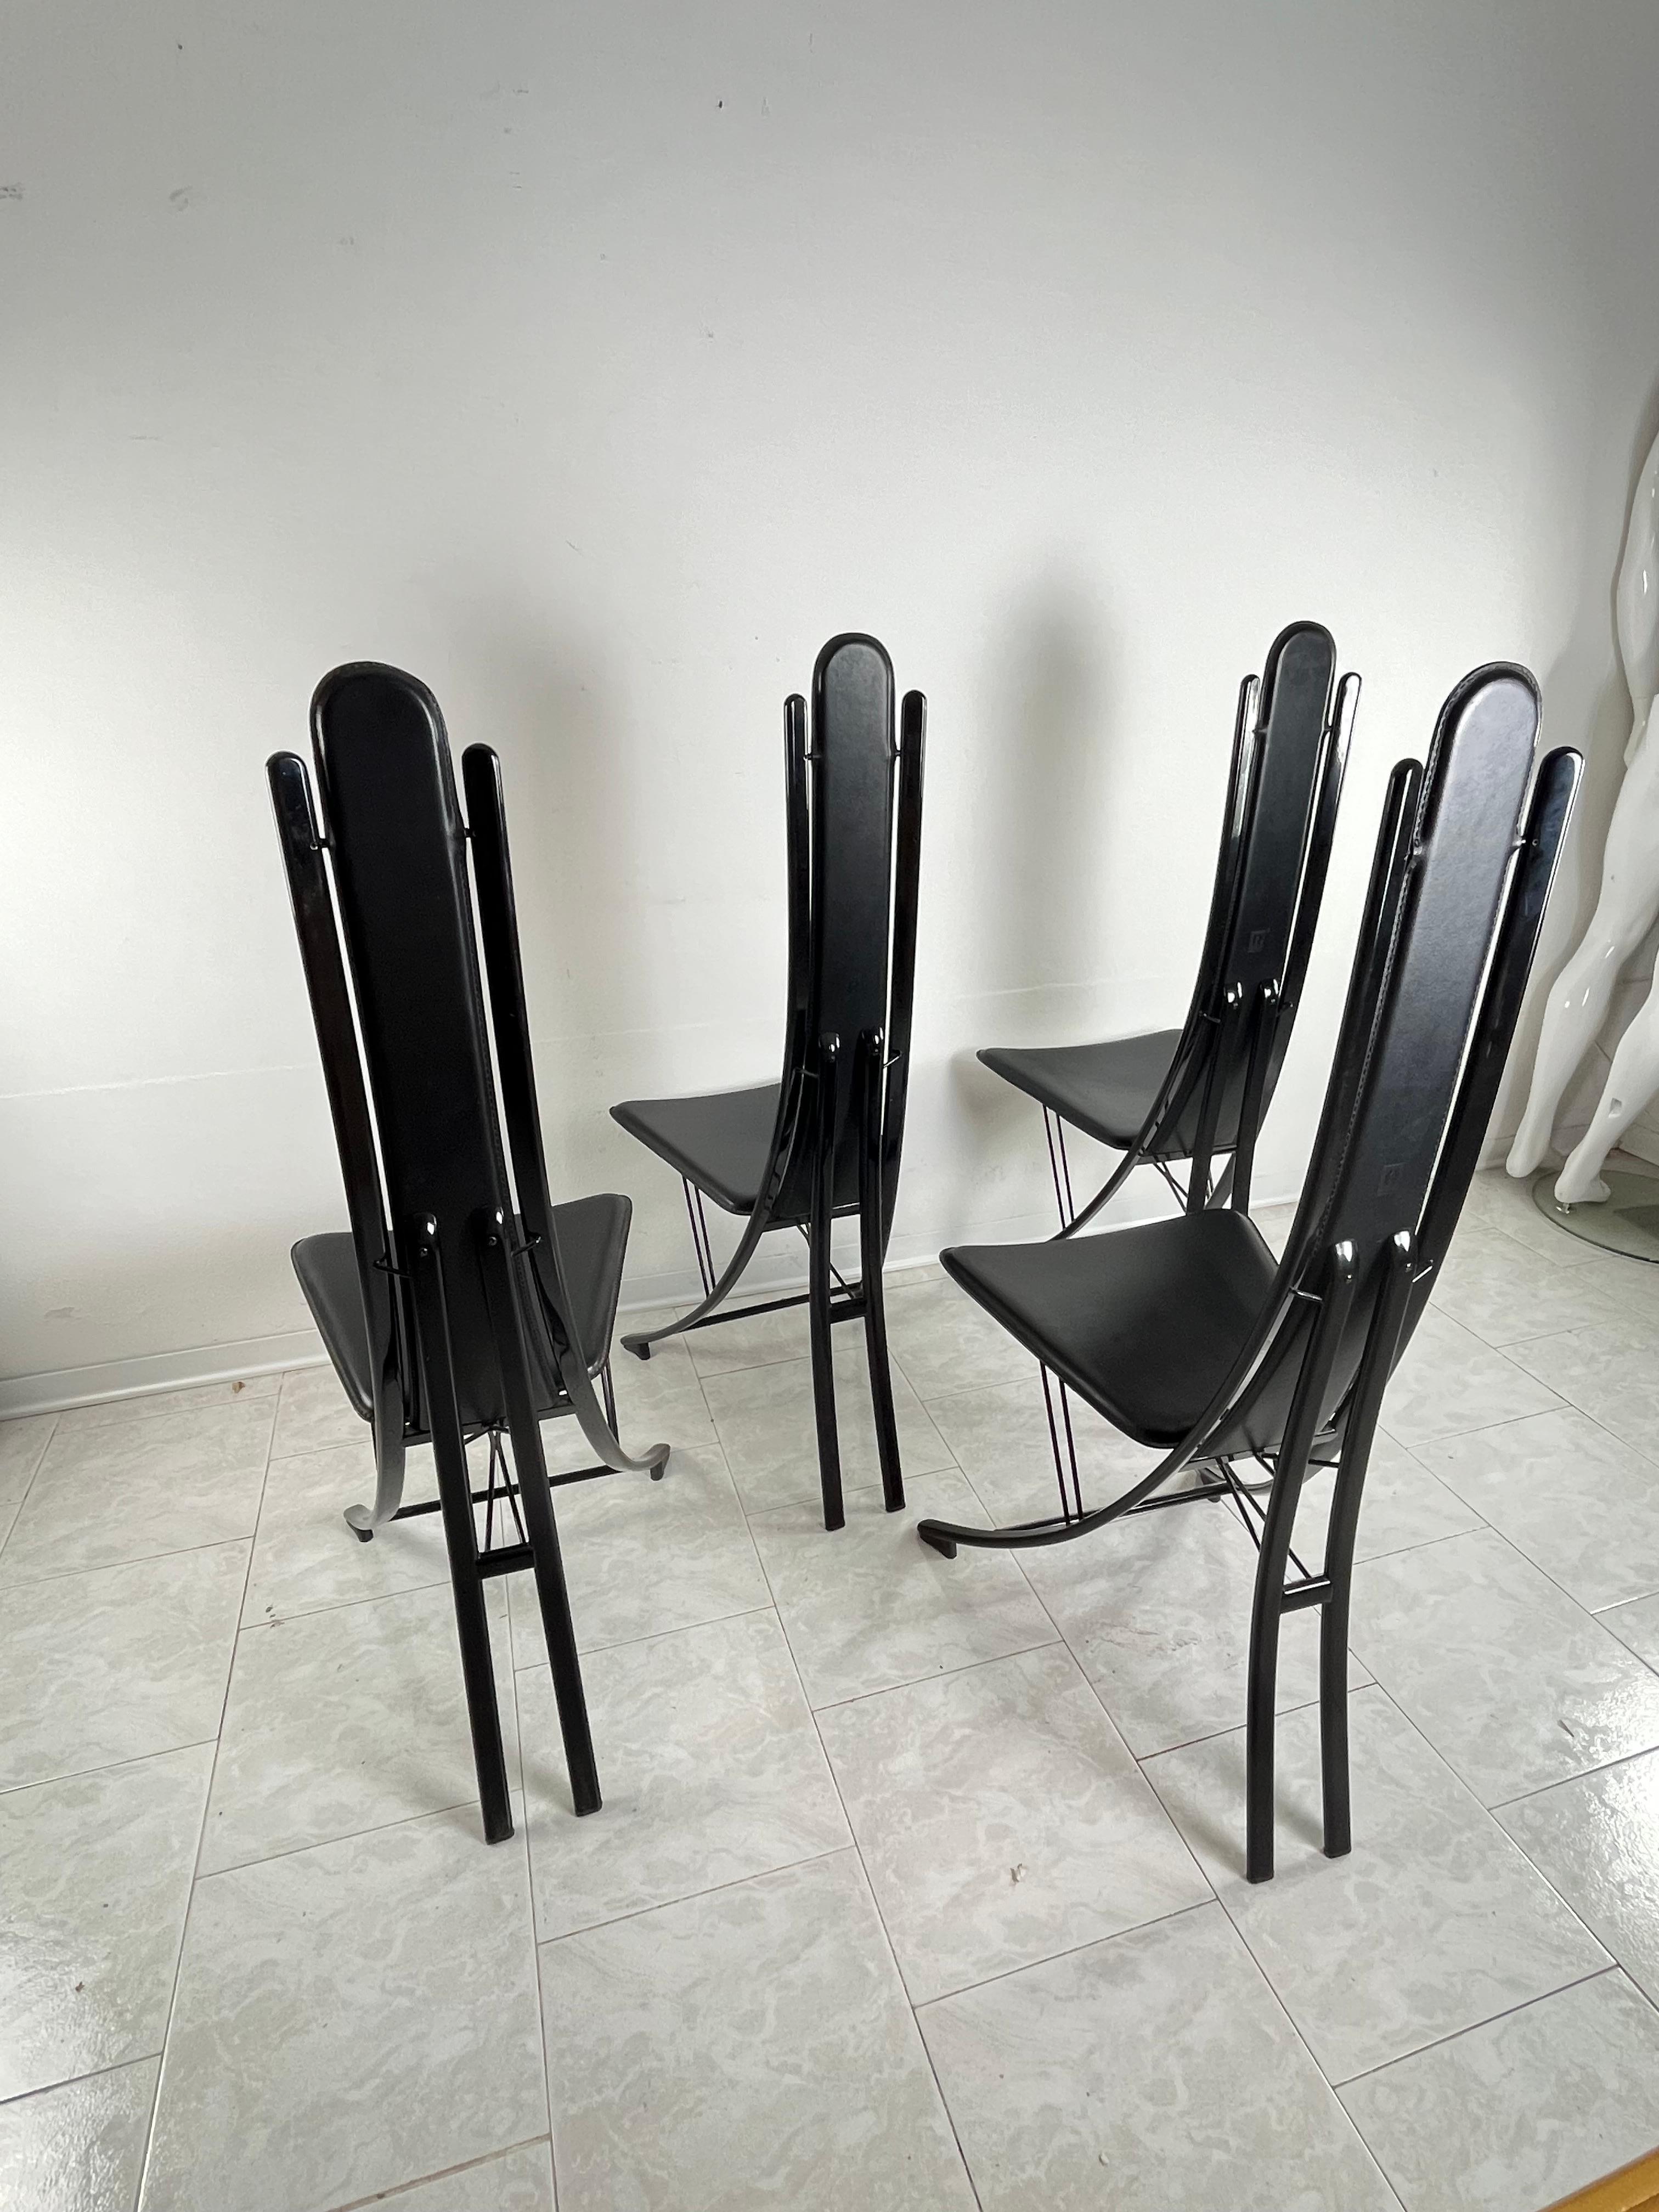 Ensemble vintage de 4 chaises en acier et cuir attribuées à Recanatini, design italien  1980s
Intact et en bon état, petits signes de vieillissement.
Ils portent la marque d'attribution imprimée sur le cuir.
